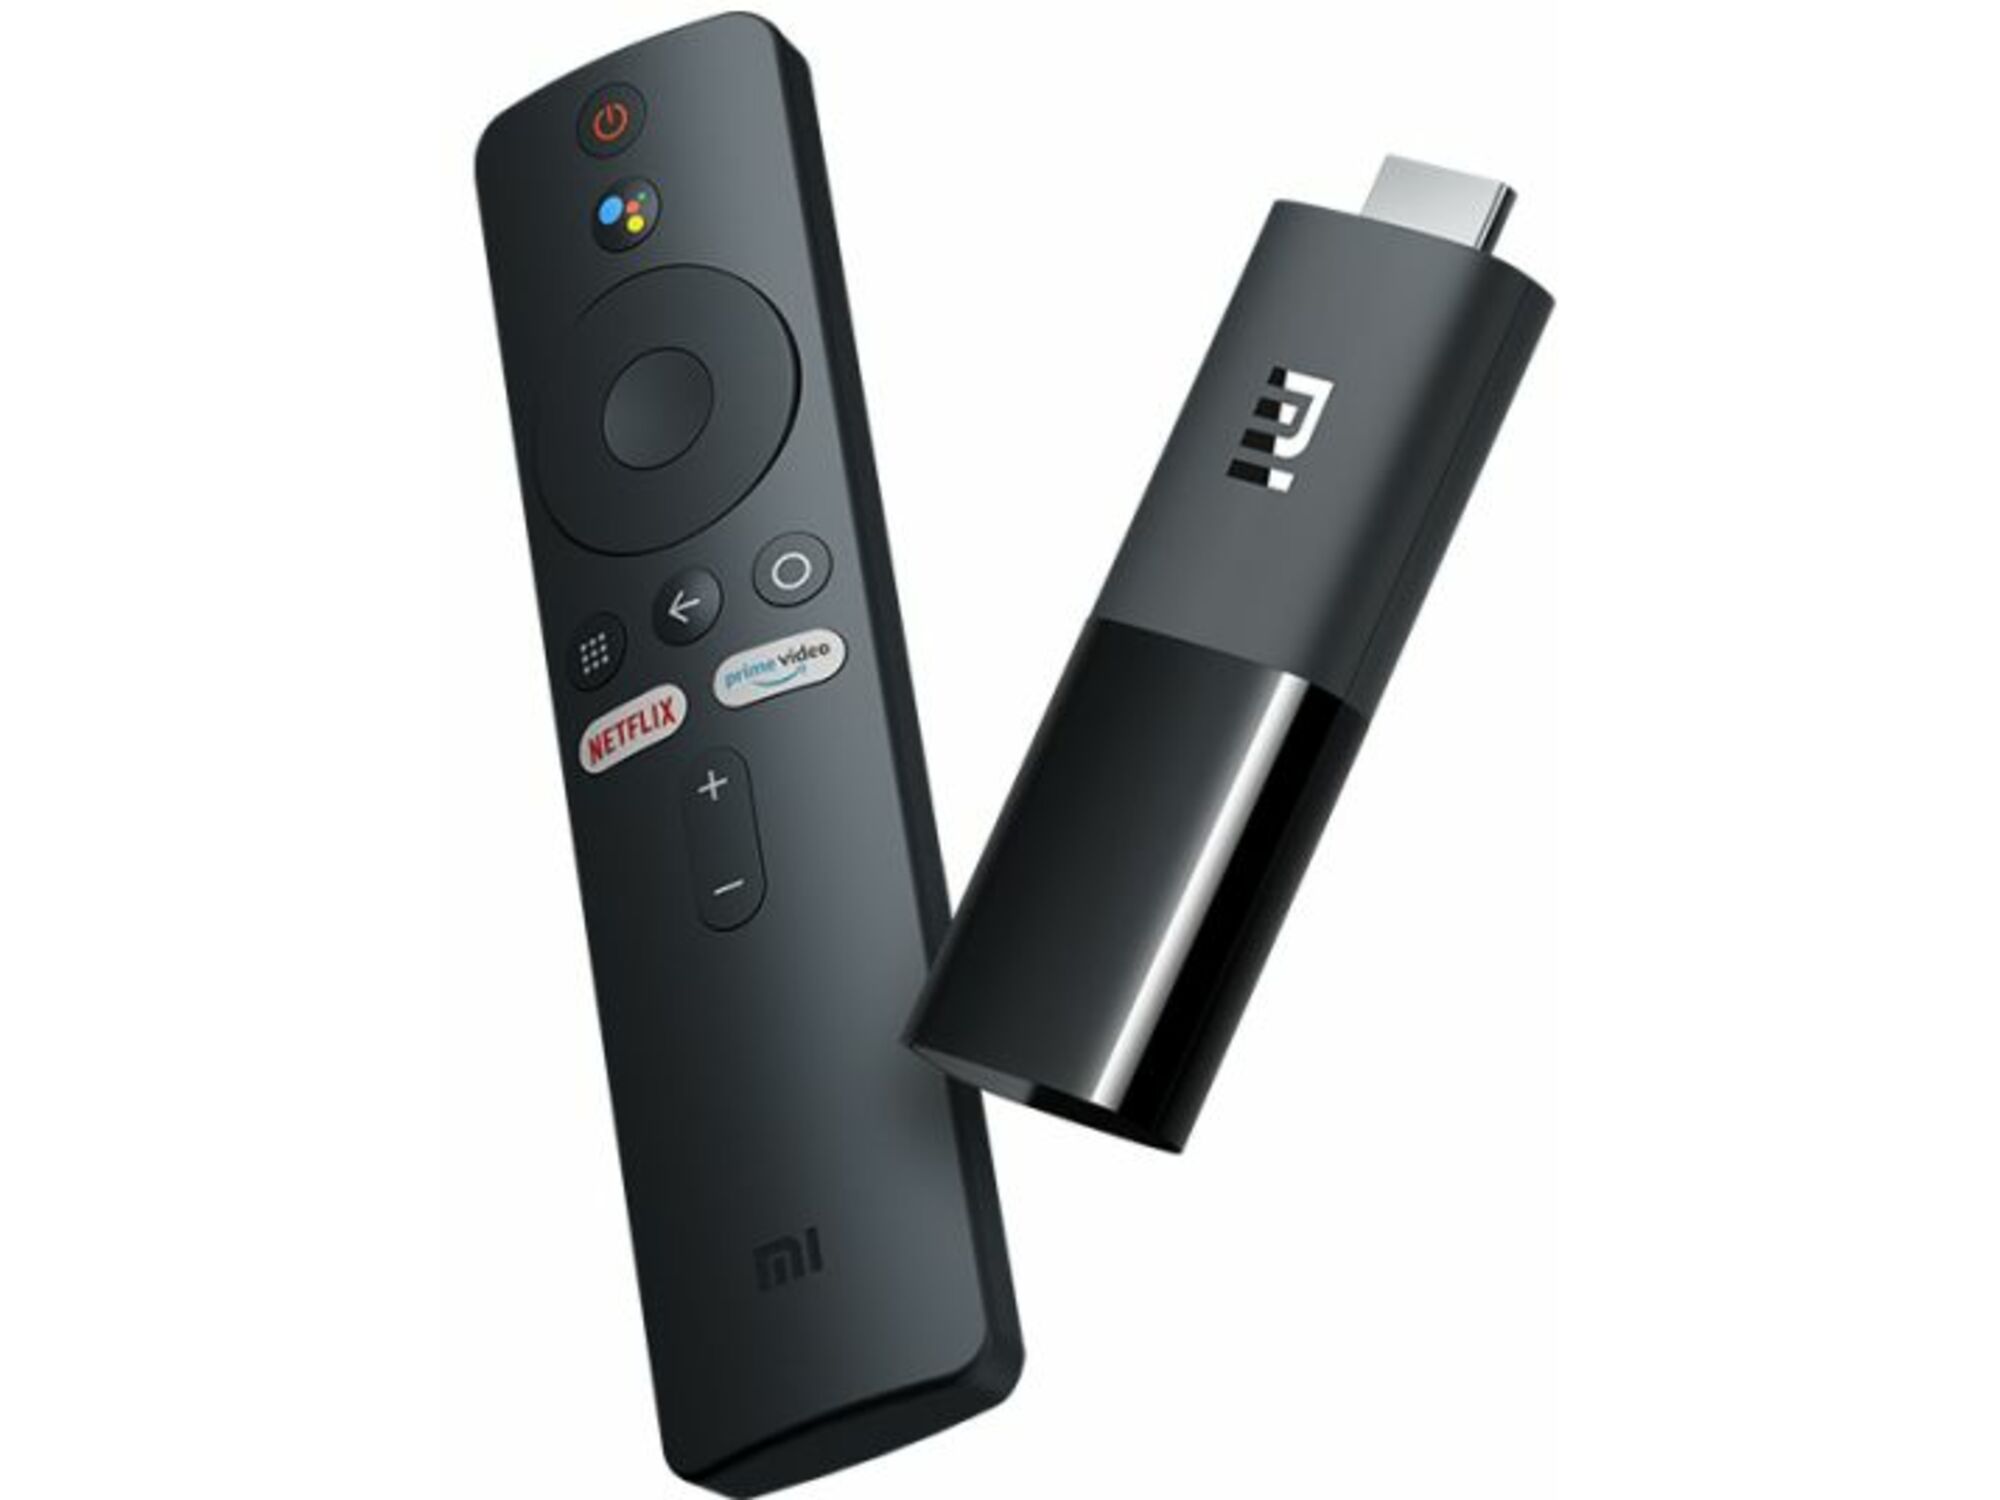 XIAOMI MI TV Stick USB, 1080p Full HD, Android